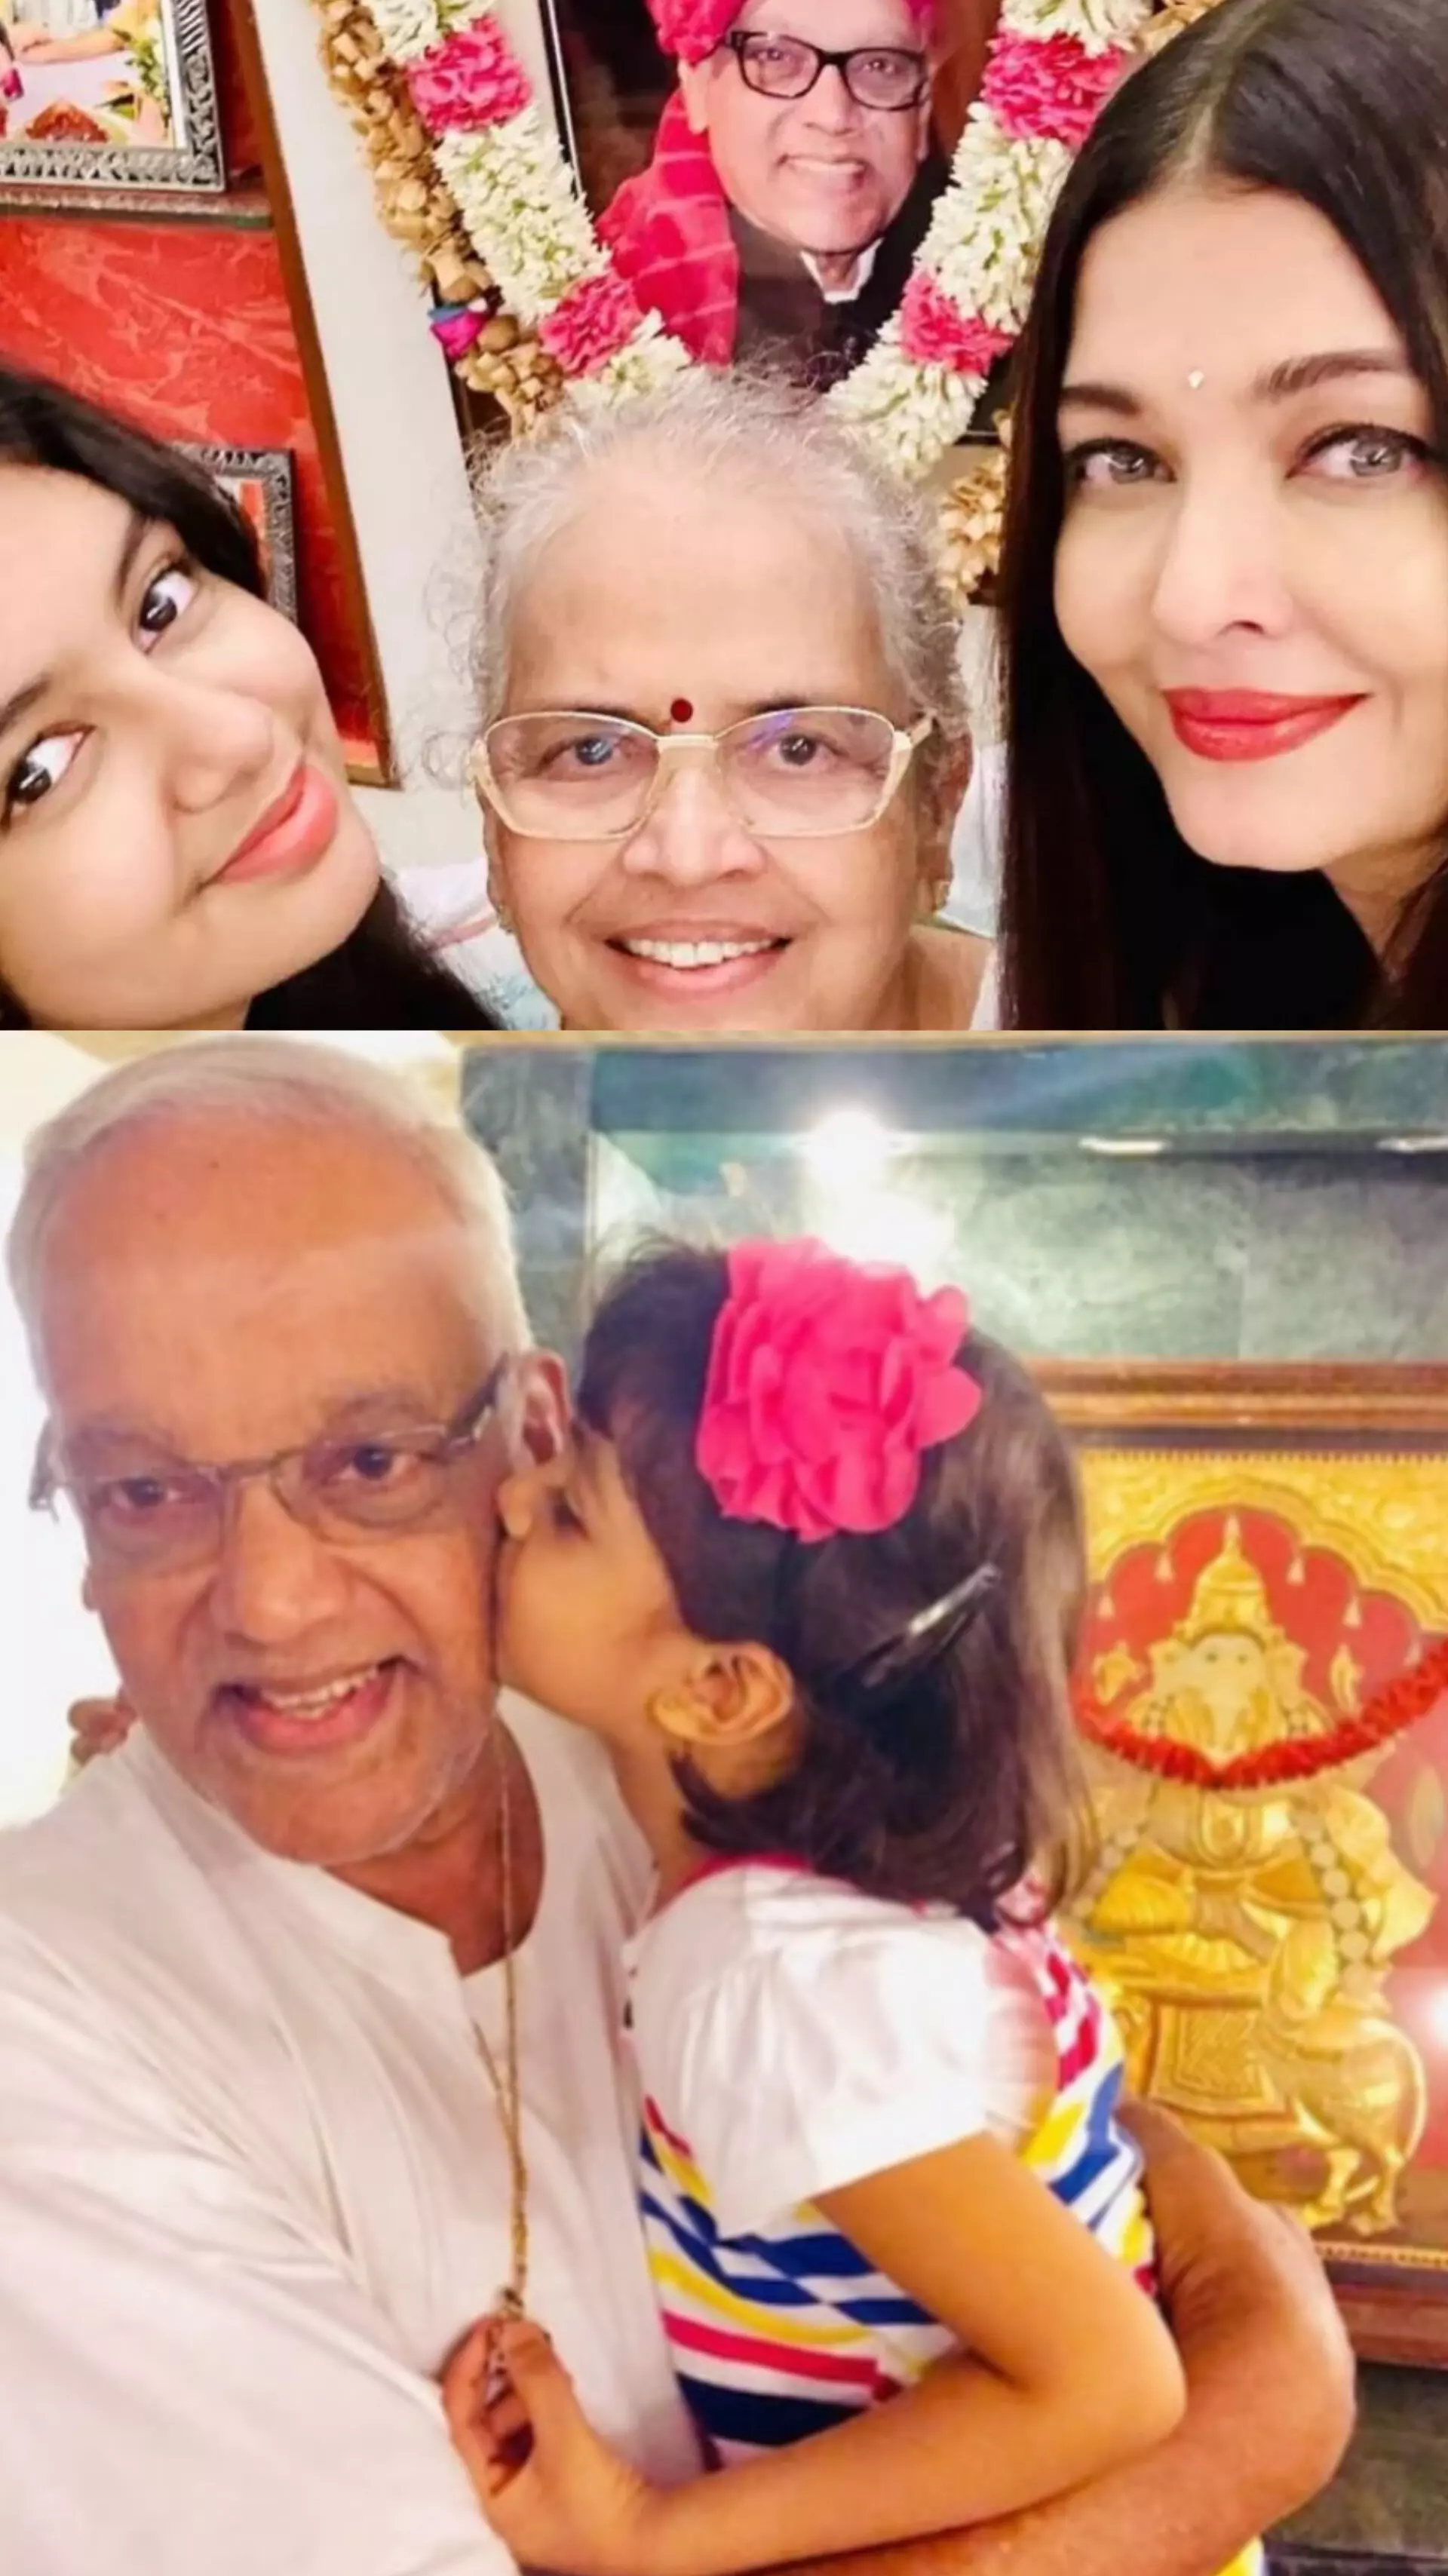 ऐश्वर्या राय बच्चन ने पिता की पुण्यतिथि पर भावुक पोस्ट शेयर किया, बेटी आराध्या के साथ तस्वीर भी पोस्ट की